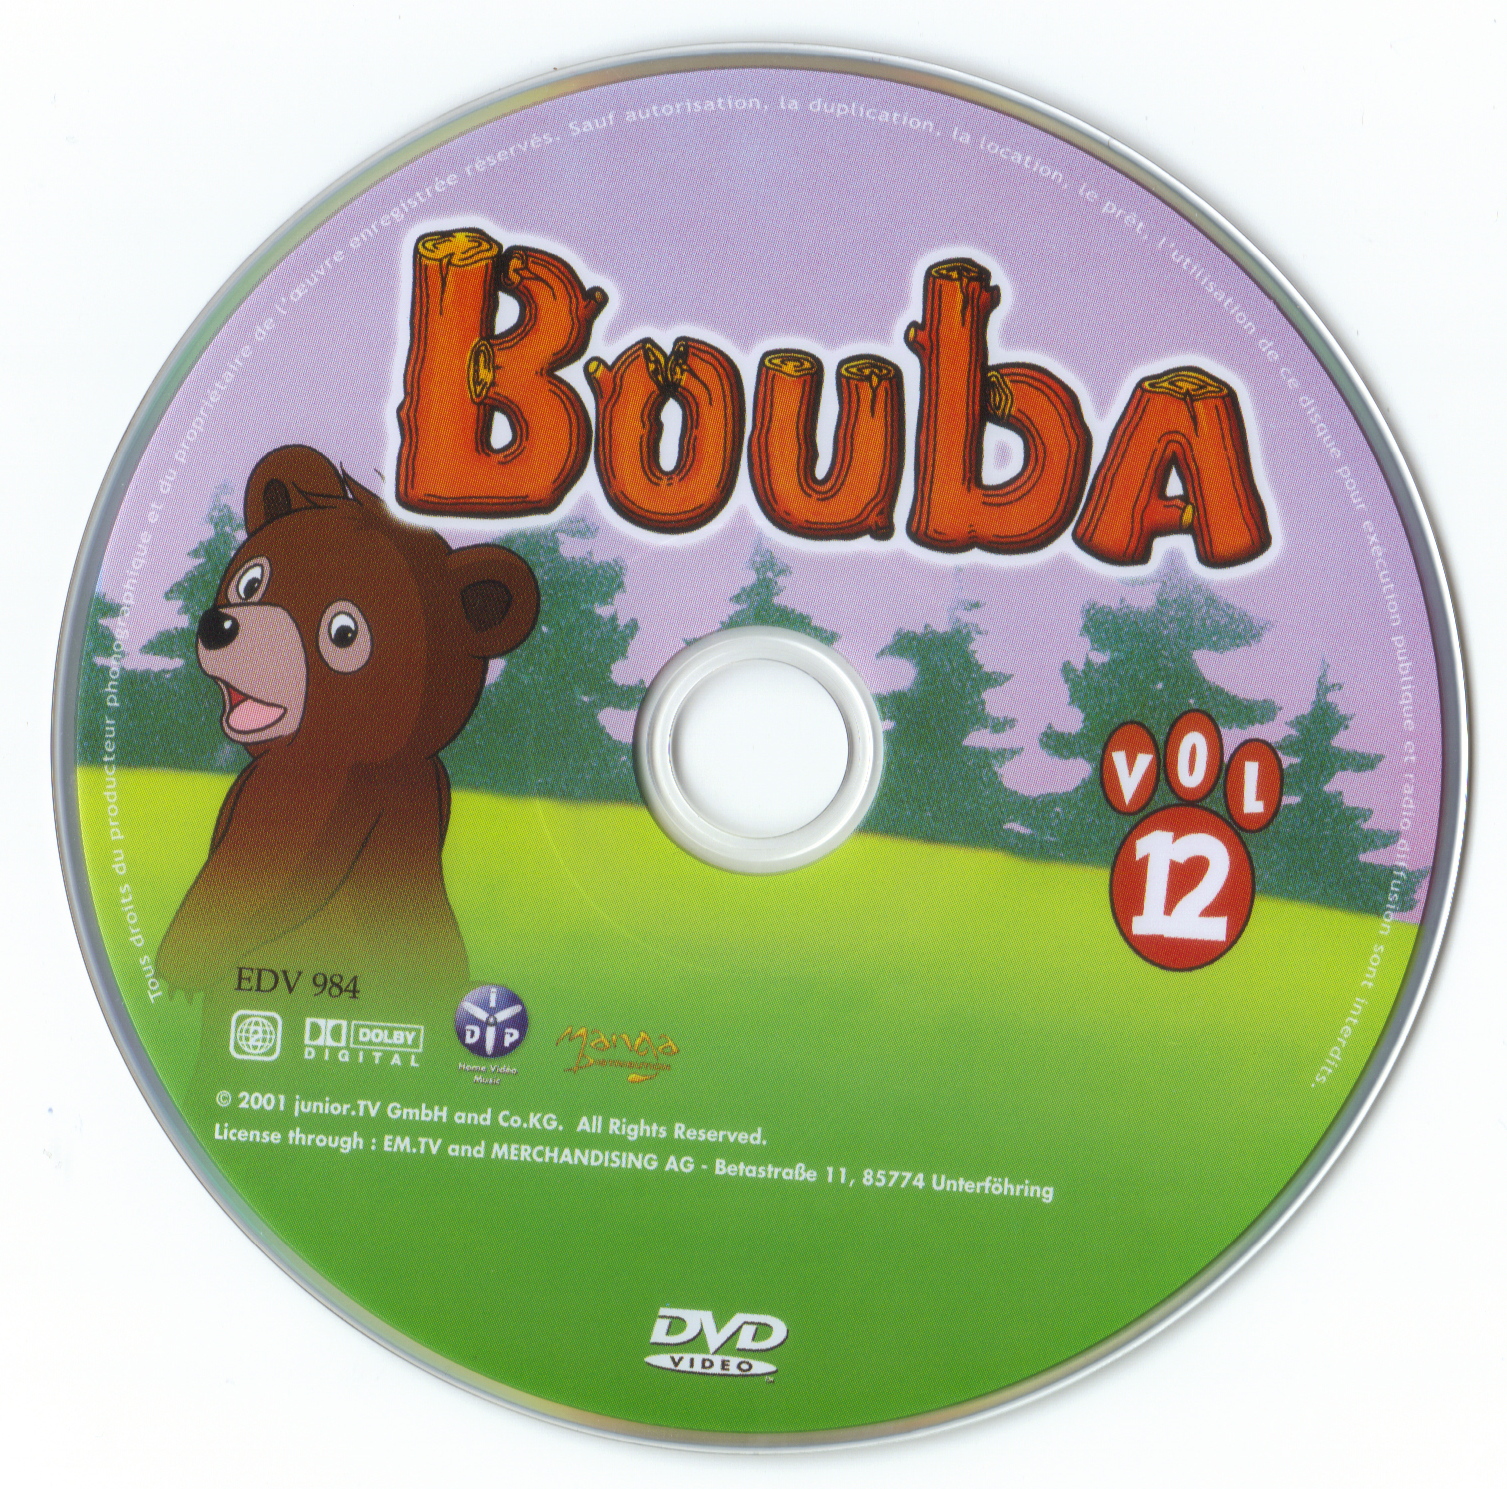 Bouba vol 12